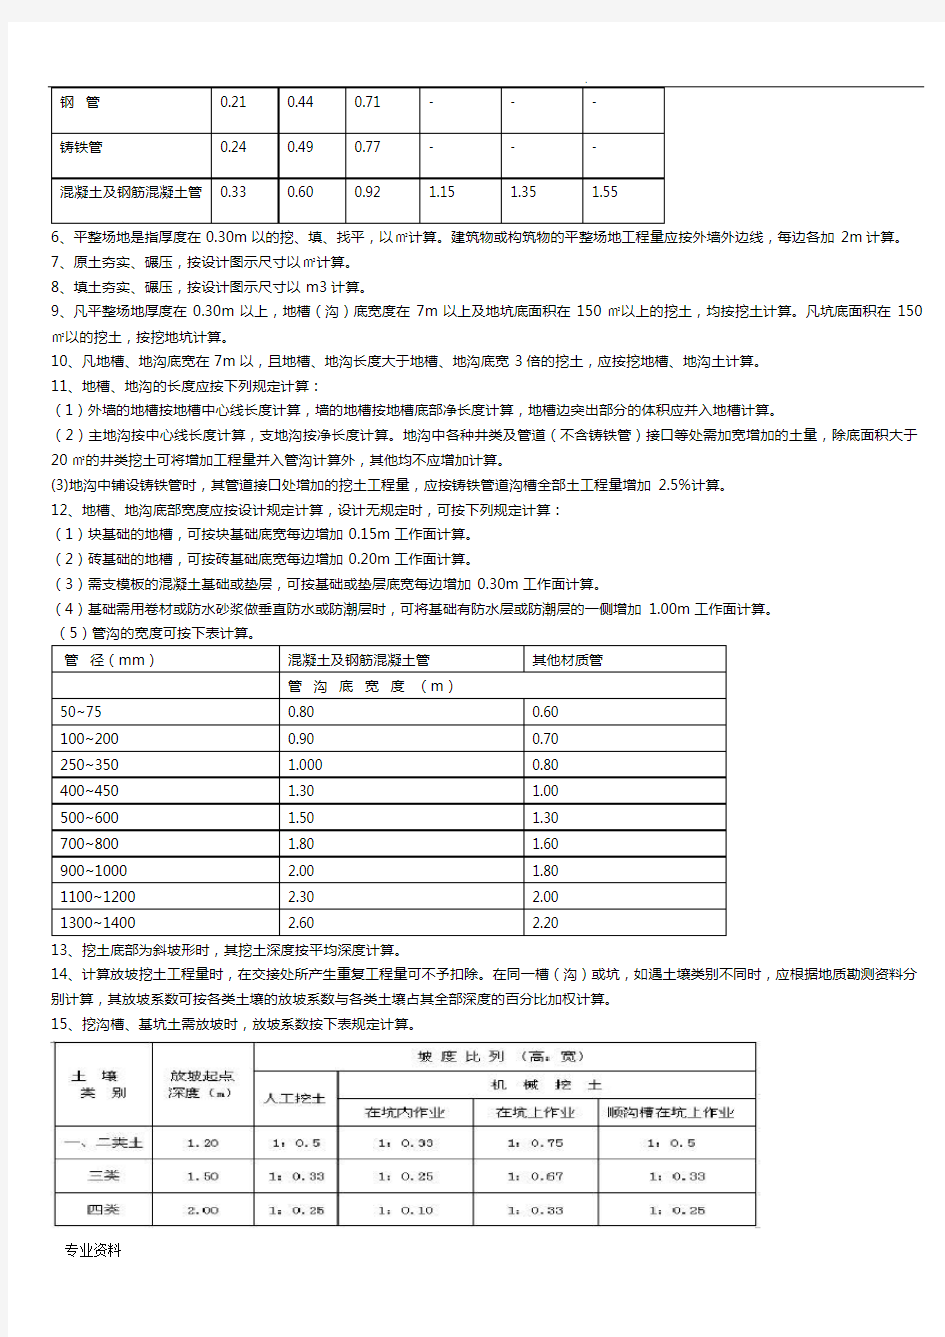 甘肃省建筑与装饰工程预算定额(2013) 计算规则